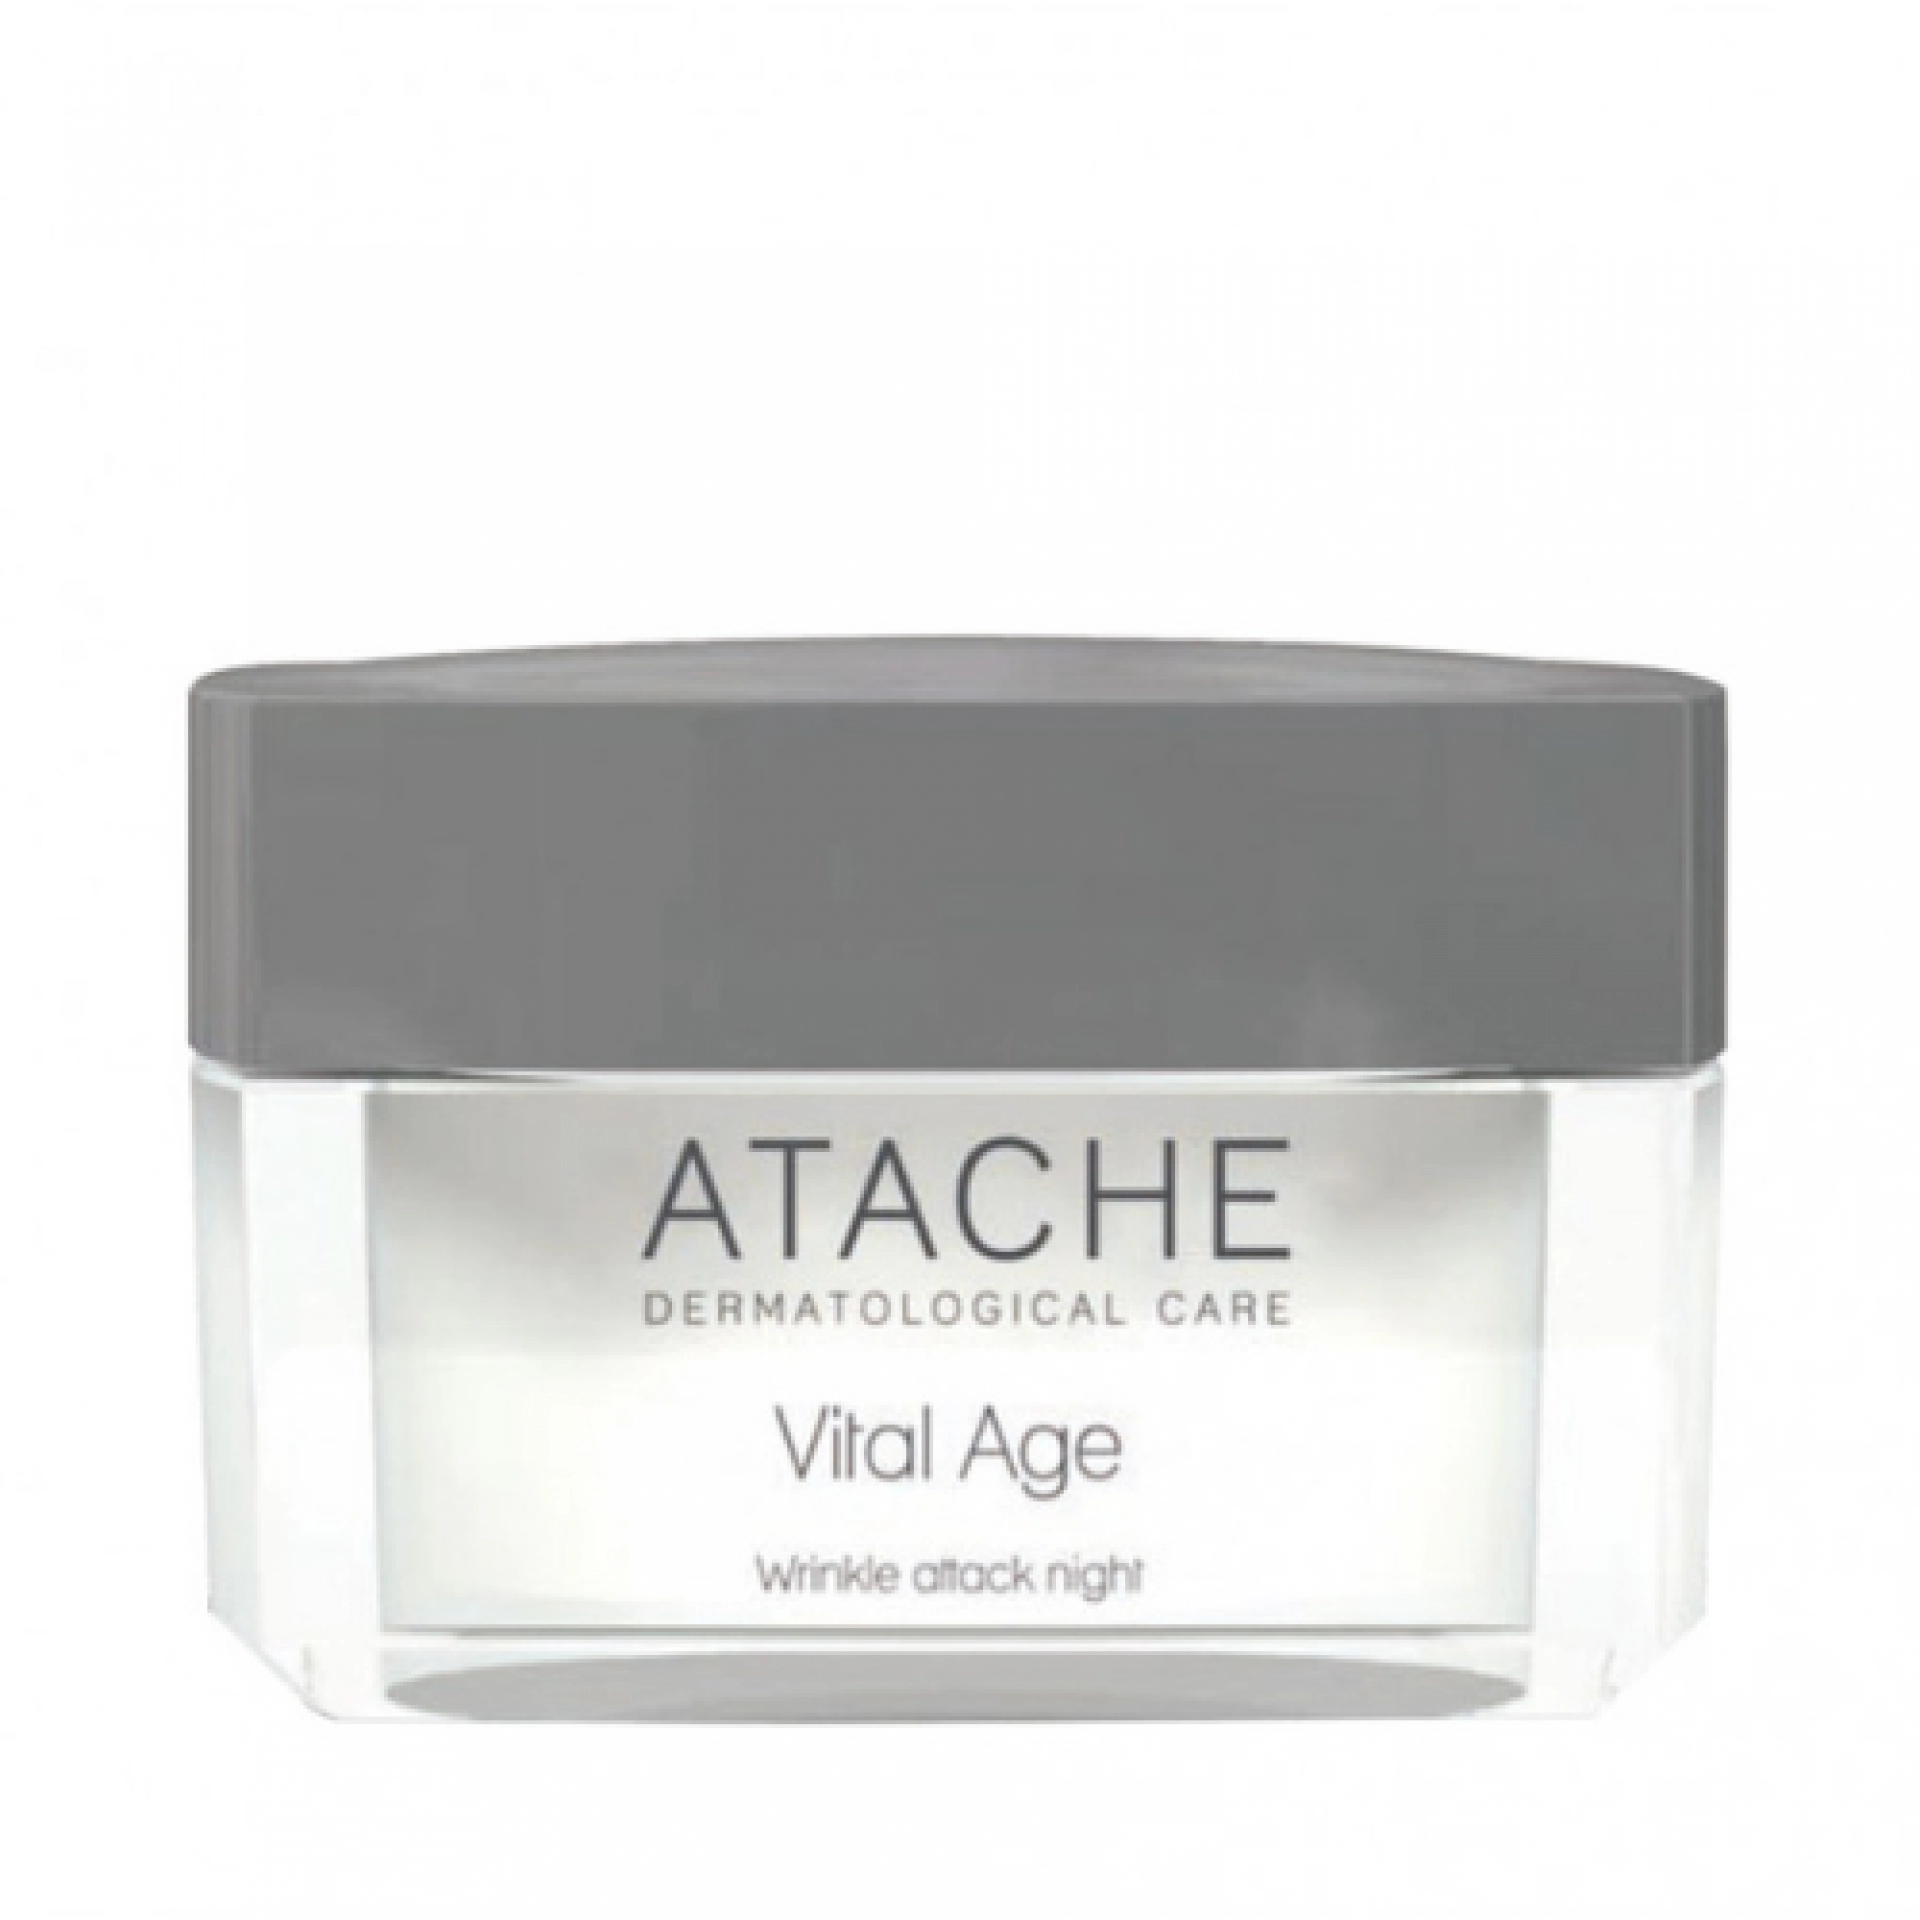 Wrinkle attack night | Crema de noche antiarrugas 50ml - Vital Age - Atache ®